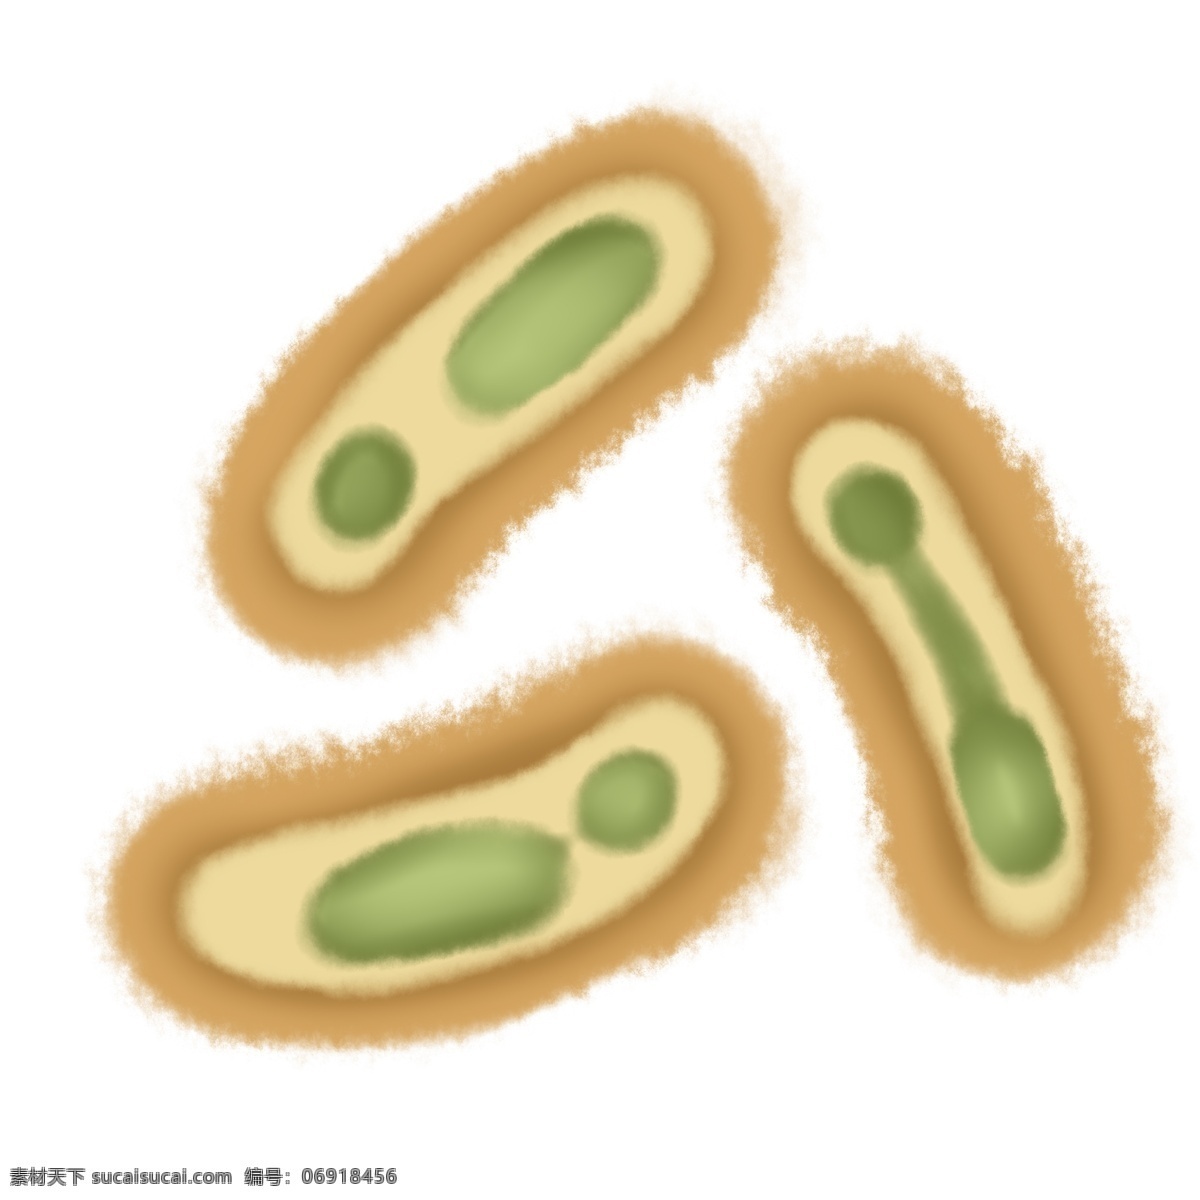 黄色 卡通 杆菌 插画 杆菌插画 黄色杆菌 生物杆菌 卡通细菌插画 细菌插画 创意细菌插画 绿色的内在